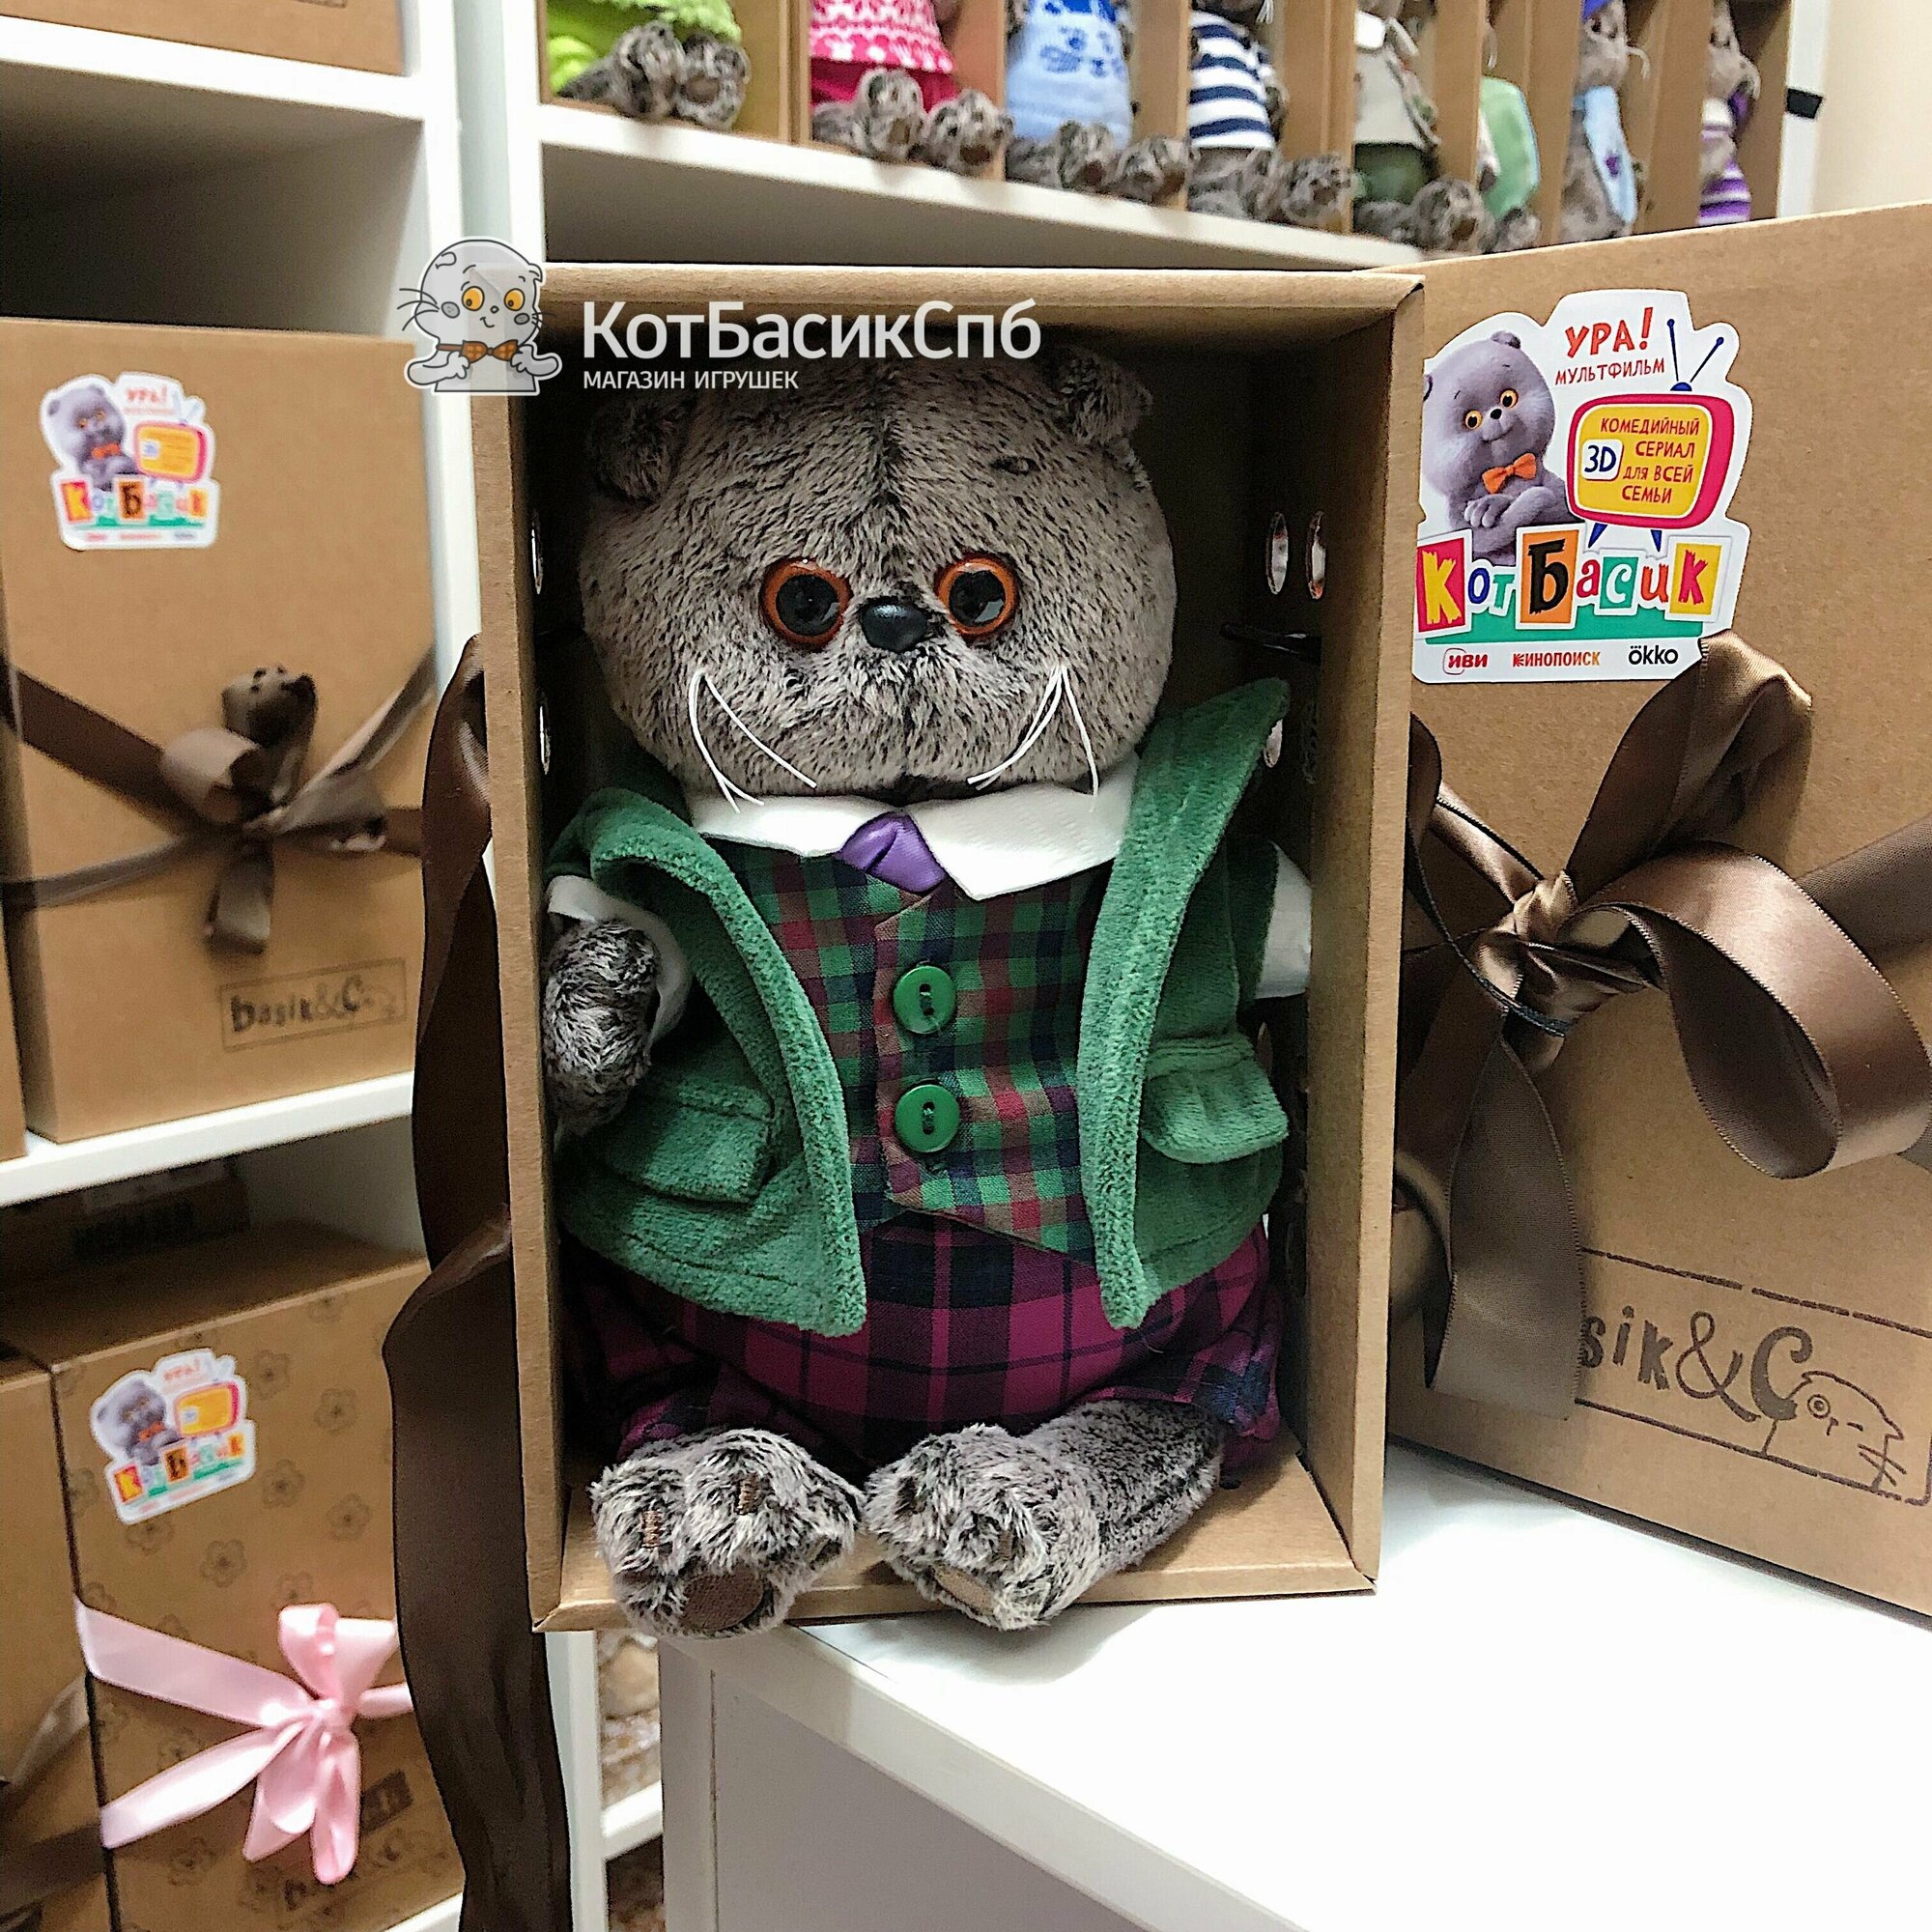 Мягкая игрушка 19 см Basik&Co в подарочной коробке - Кот Басик в зеленом бархатном пиджаке